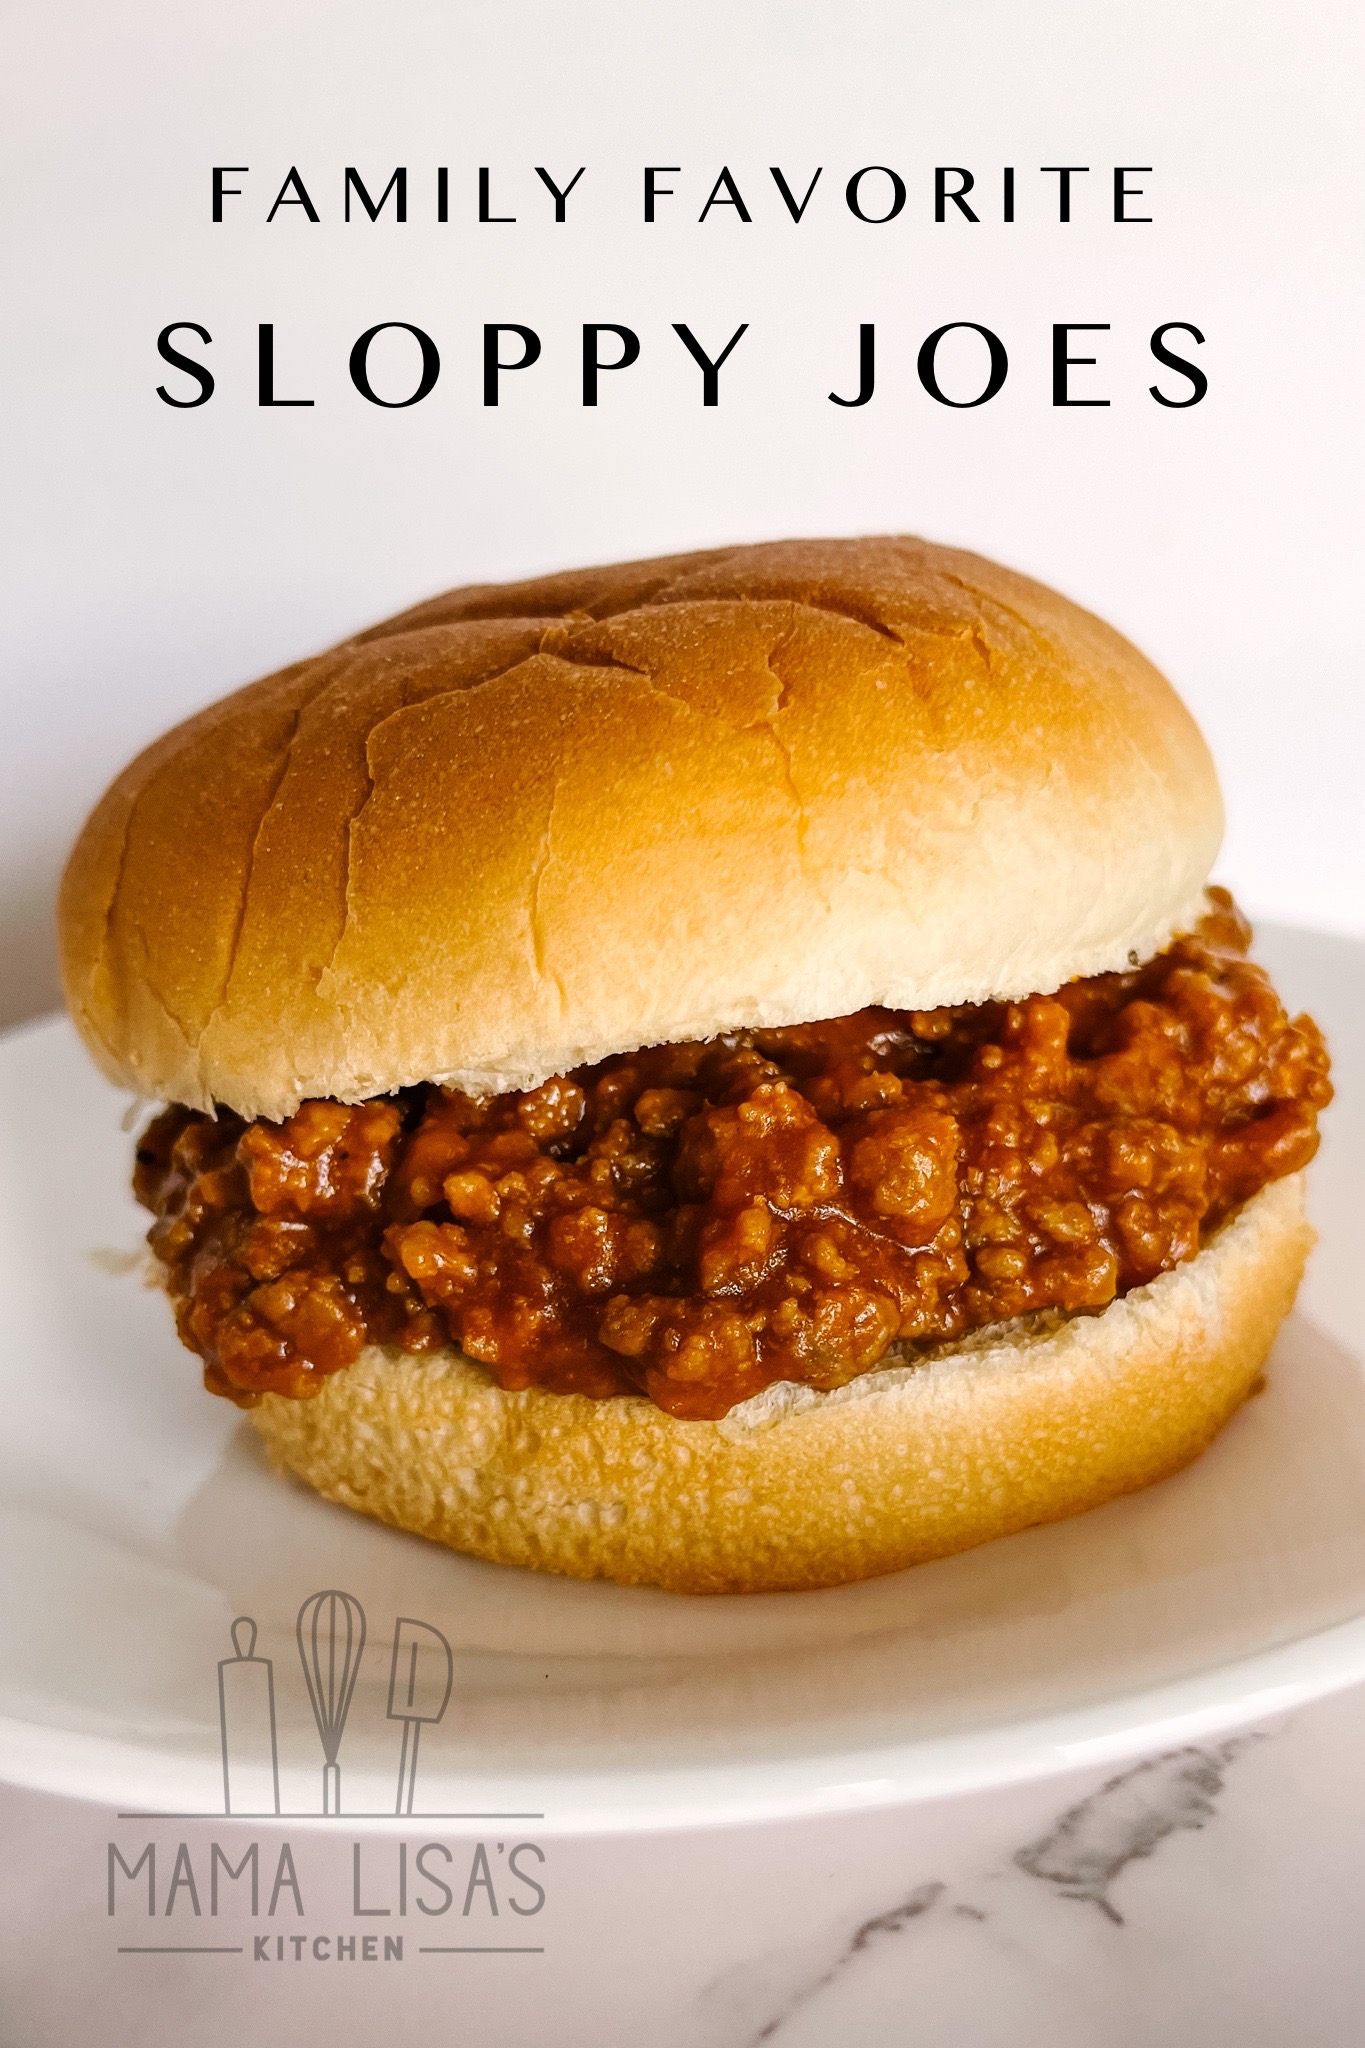 Sloppy Joe on bun